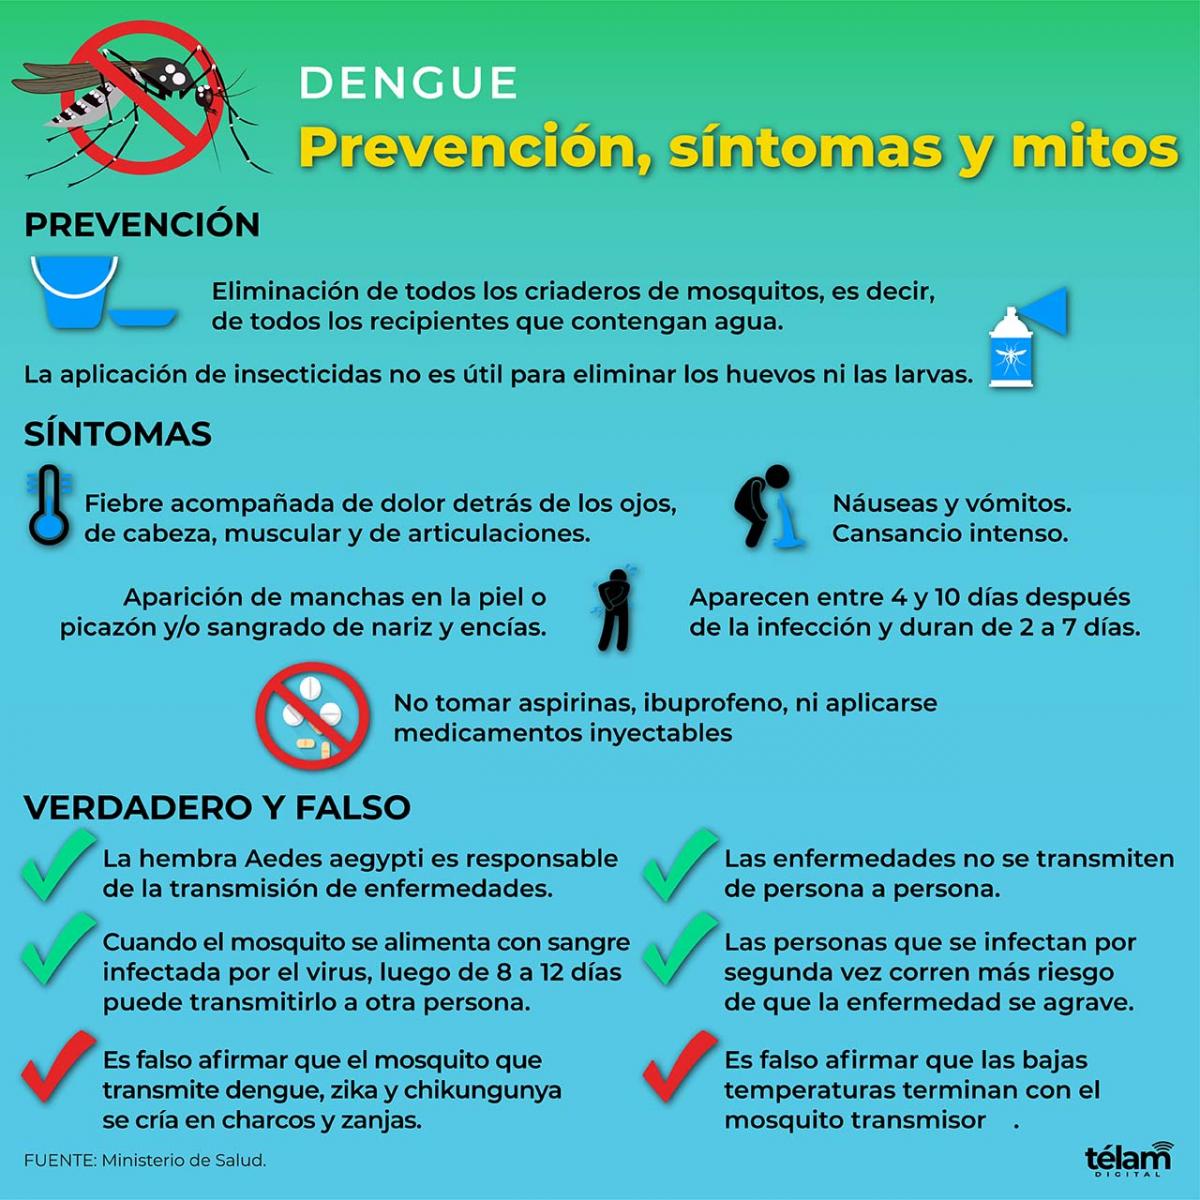 Eliminar los criaderos de mosquitos y no automedicarse, entre las claves contra el dengue imagen-2